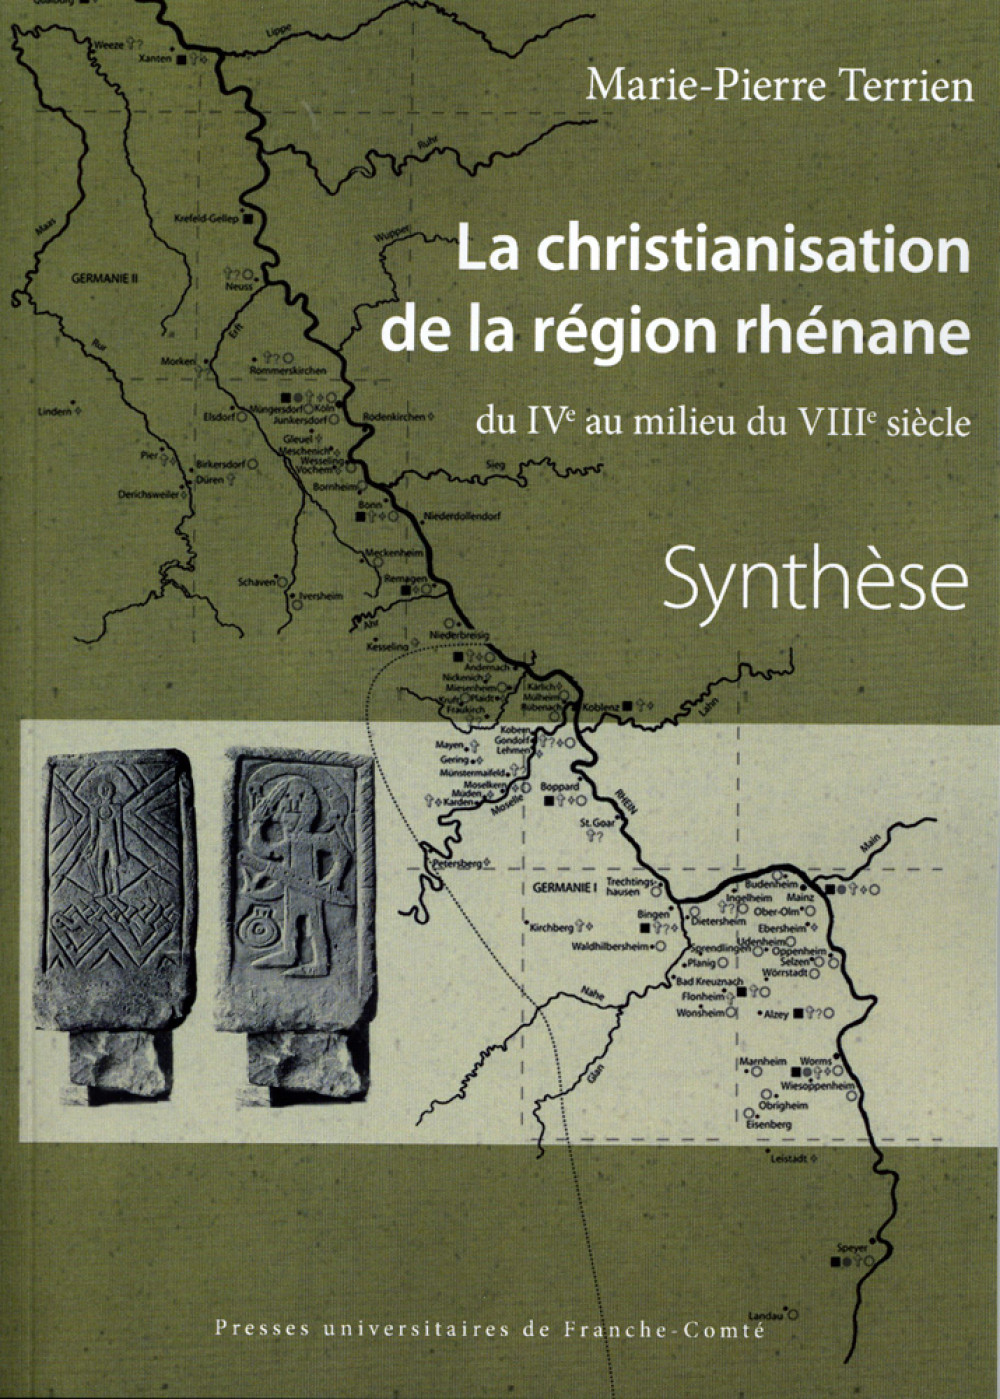 La christianisation de la région rhénane. Du IVe au milieu du VIIIe siècle. 2 volumes : Synthèse et Corpus